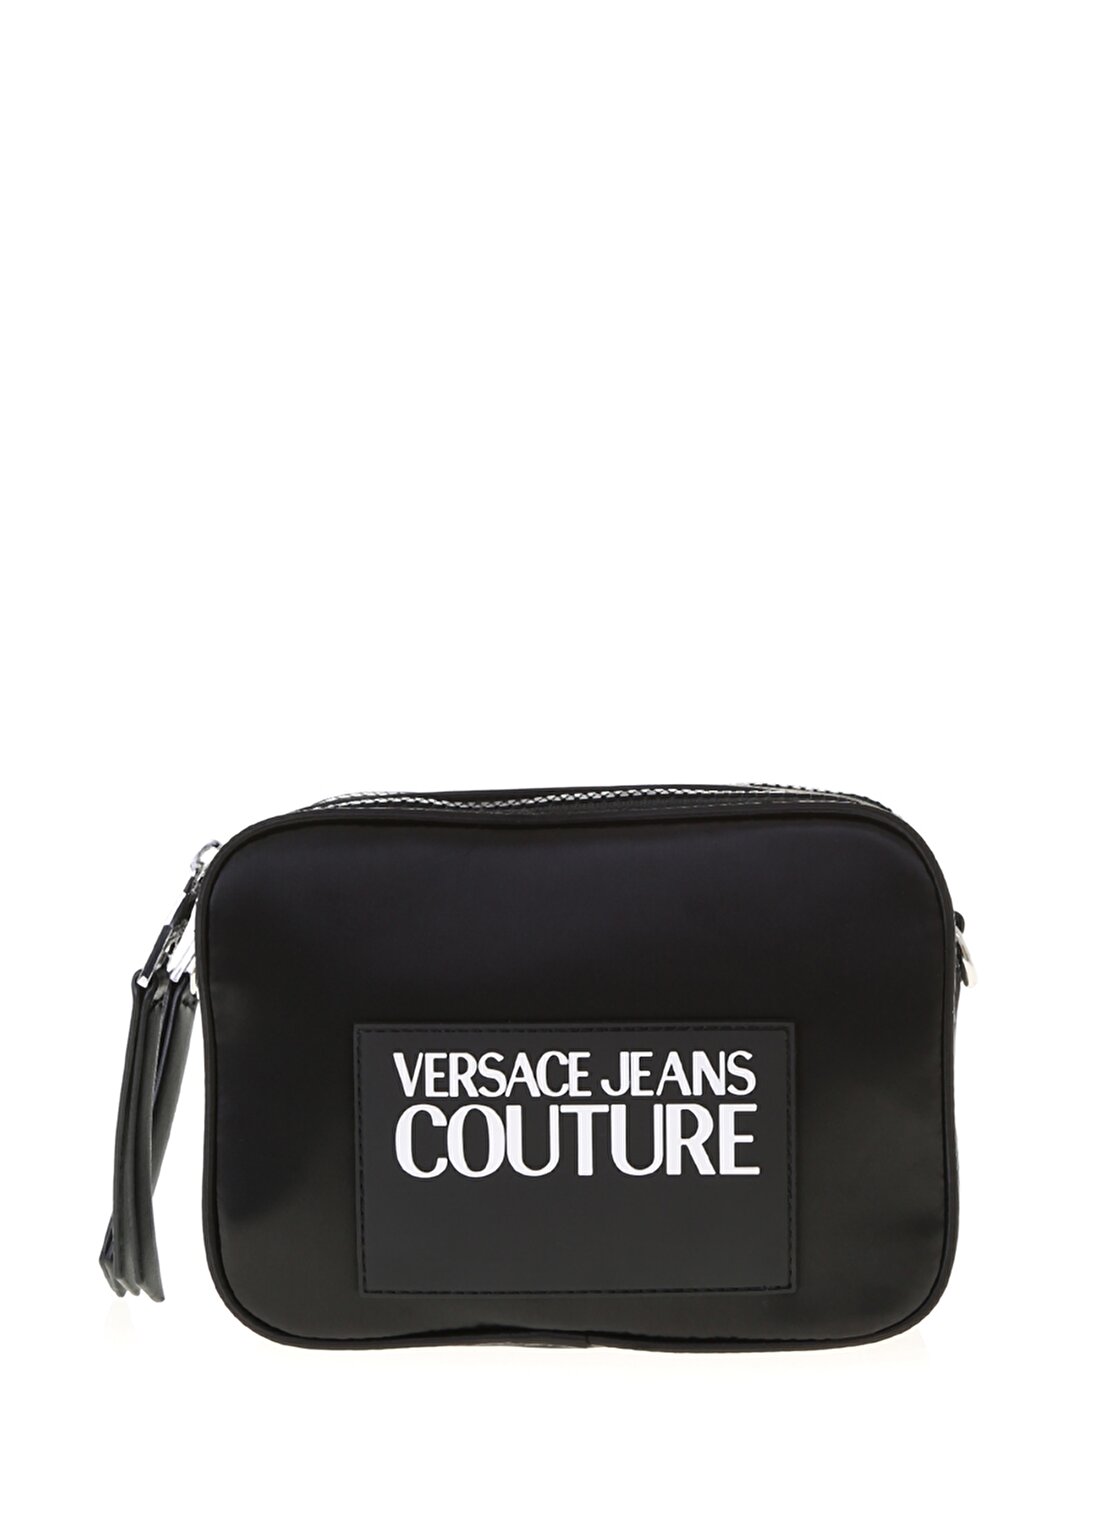 Versace Jeans Siyah Kadın Omuz Çantası